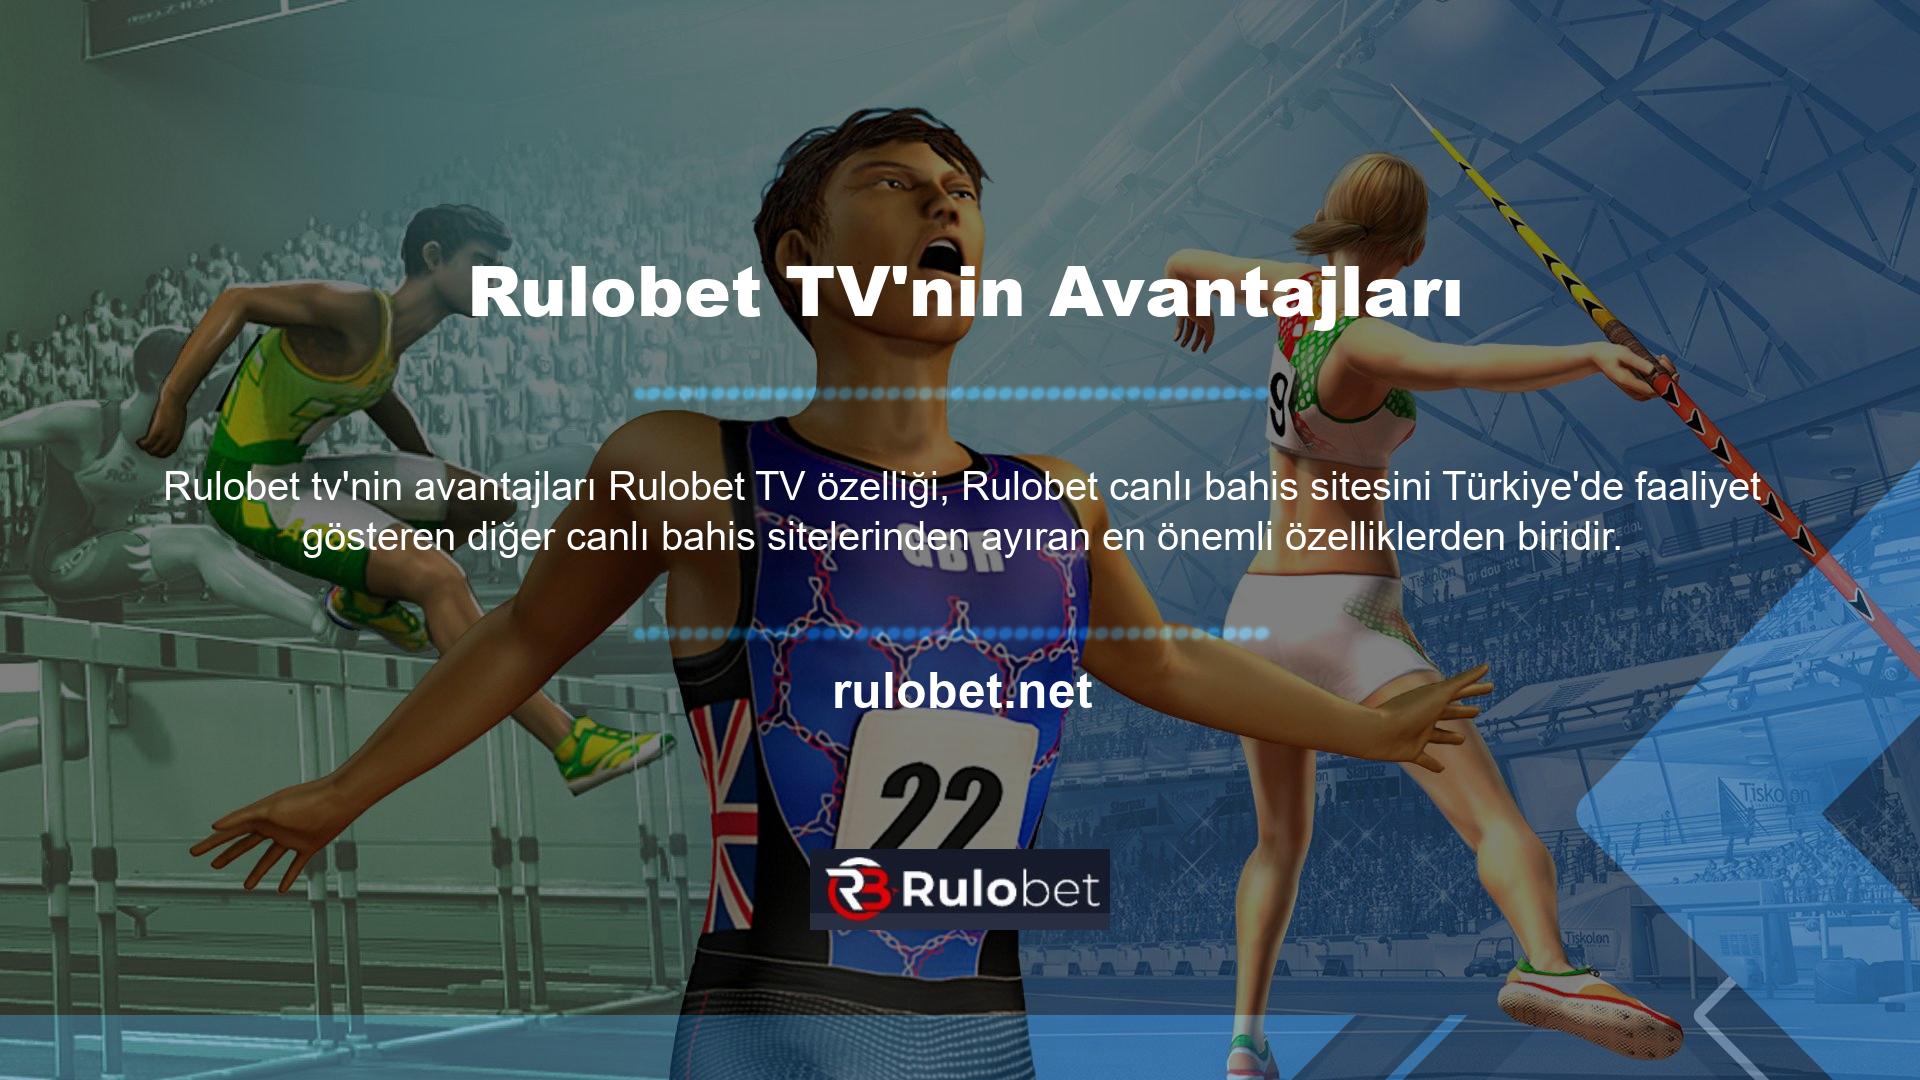 Rulobet web sitesinde üyelere sunulan bir diğer hizmet de TV'dir